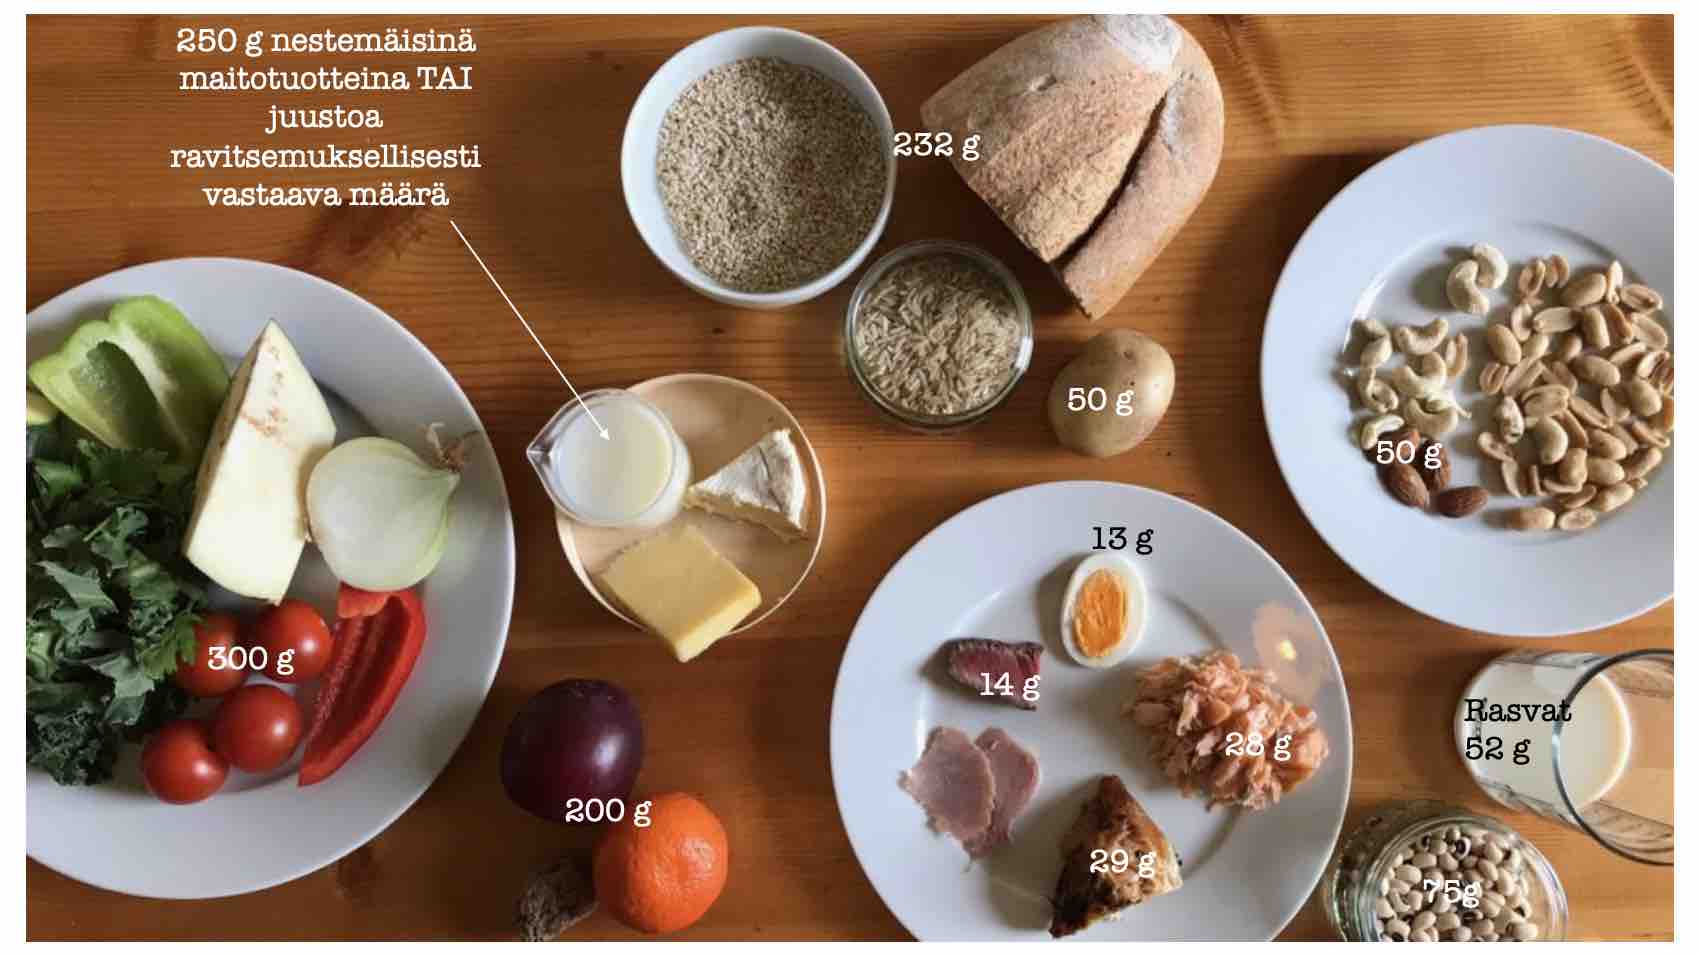 Maapallolle terveellinen ruokavalio muuttaisi suomalaisten ravintoaineiden saantia ja ruoka-aineiden kulutusta